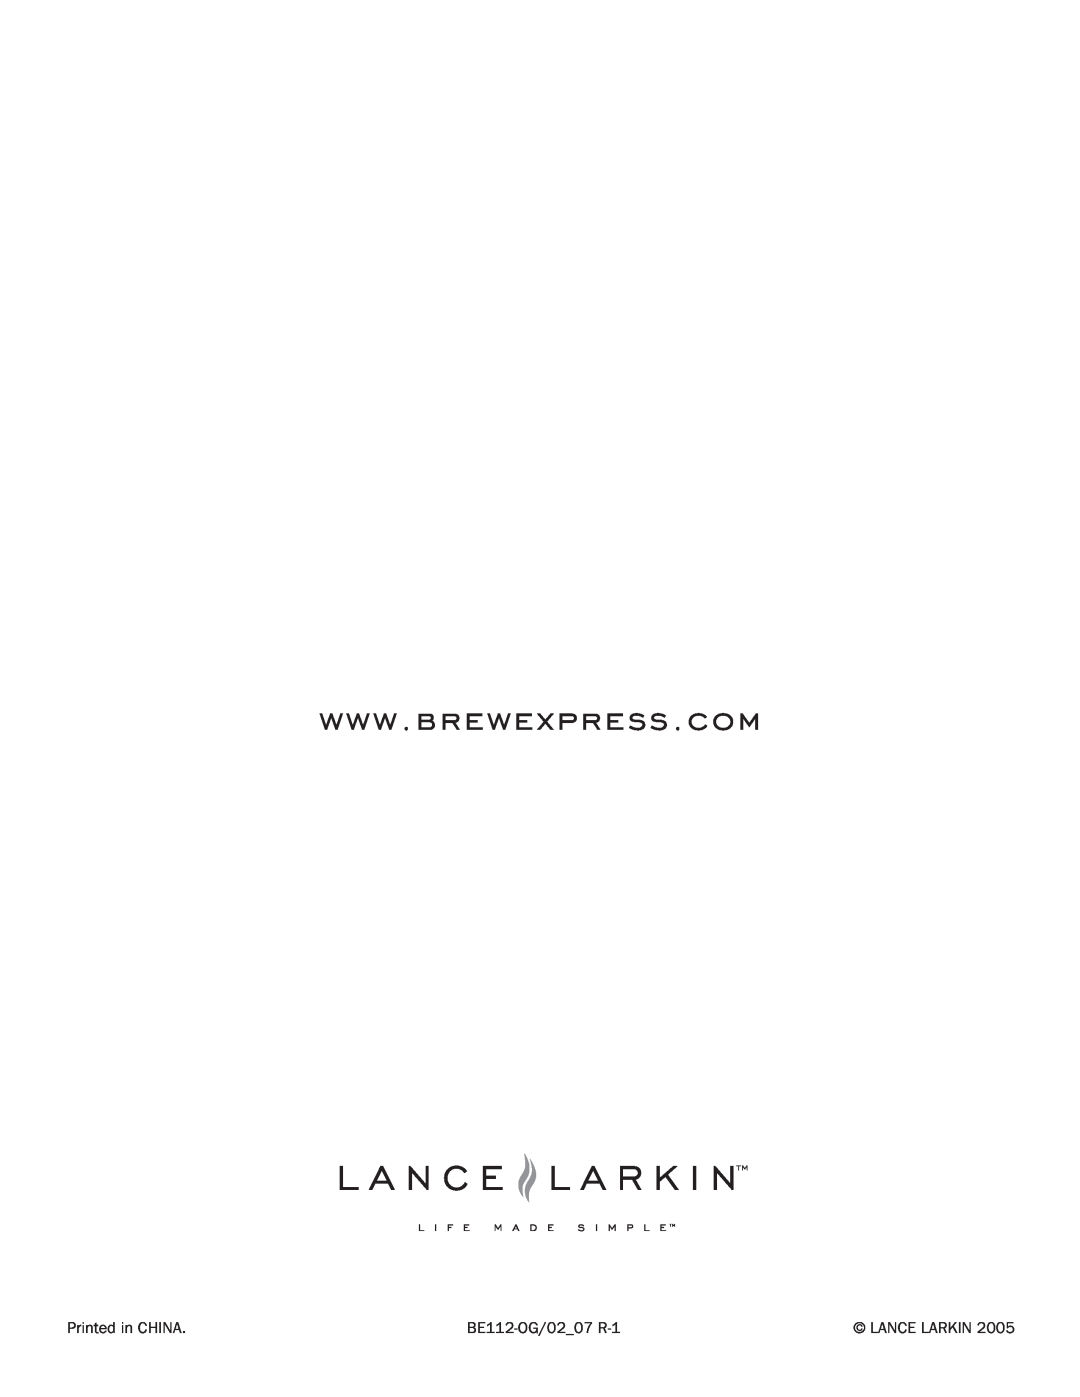 Lance-Larkin BE-112 manual Printed in CHINA, BE112-OG/0207 R-1, Lance Larkin 